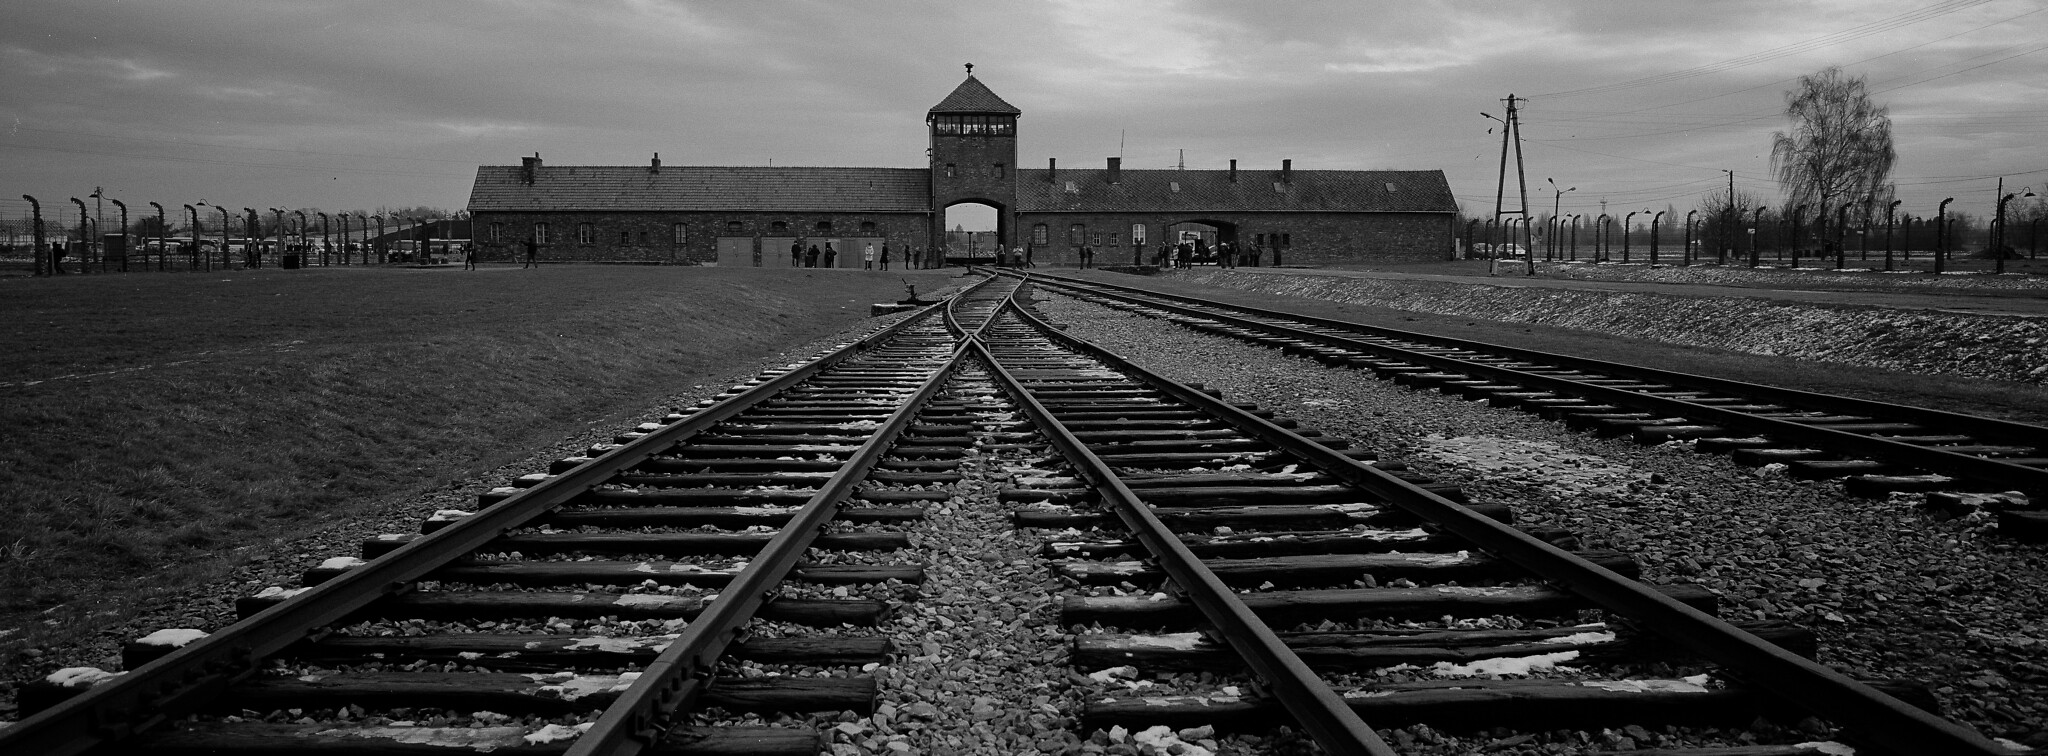 La voie ferrée qui menait à l’ancien camp de la mort nazi d’Auschwitz Birkenau ou Auschwitz II, à Oswiecim, en Pologne.